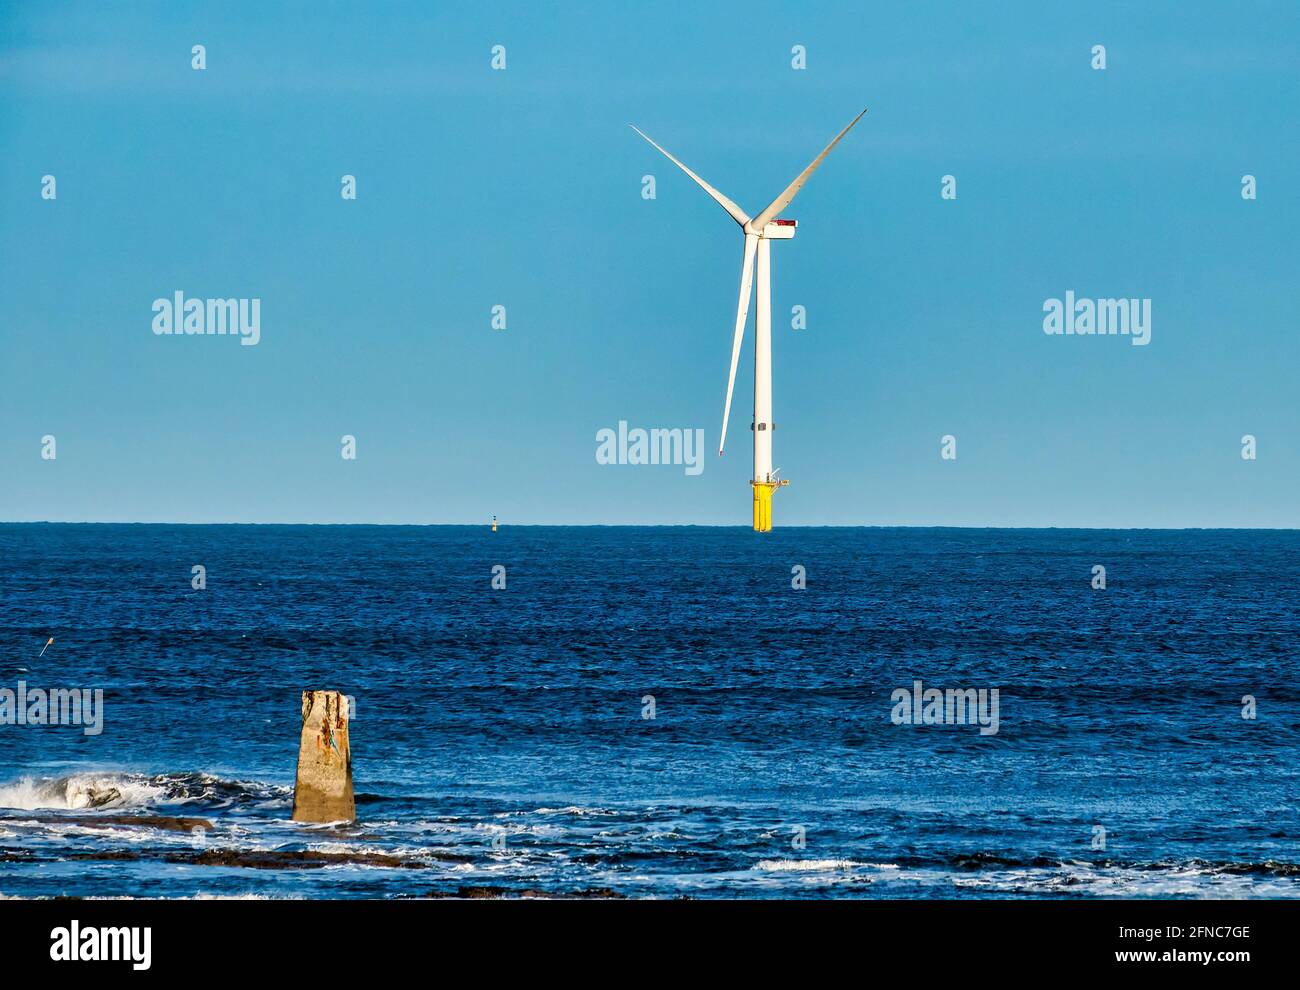 La barca a vela scivola oltre una turbina eolica del Mare del Nord Foto  stock - Alamy